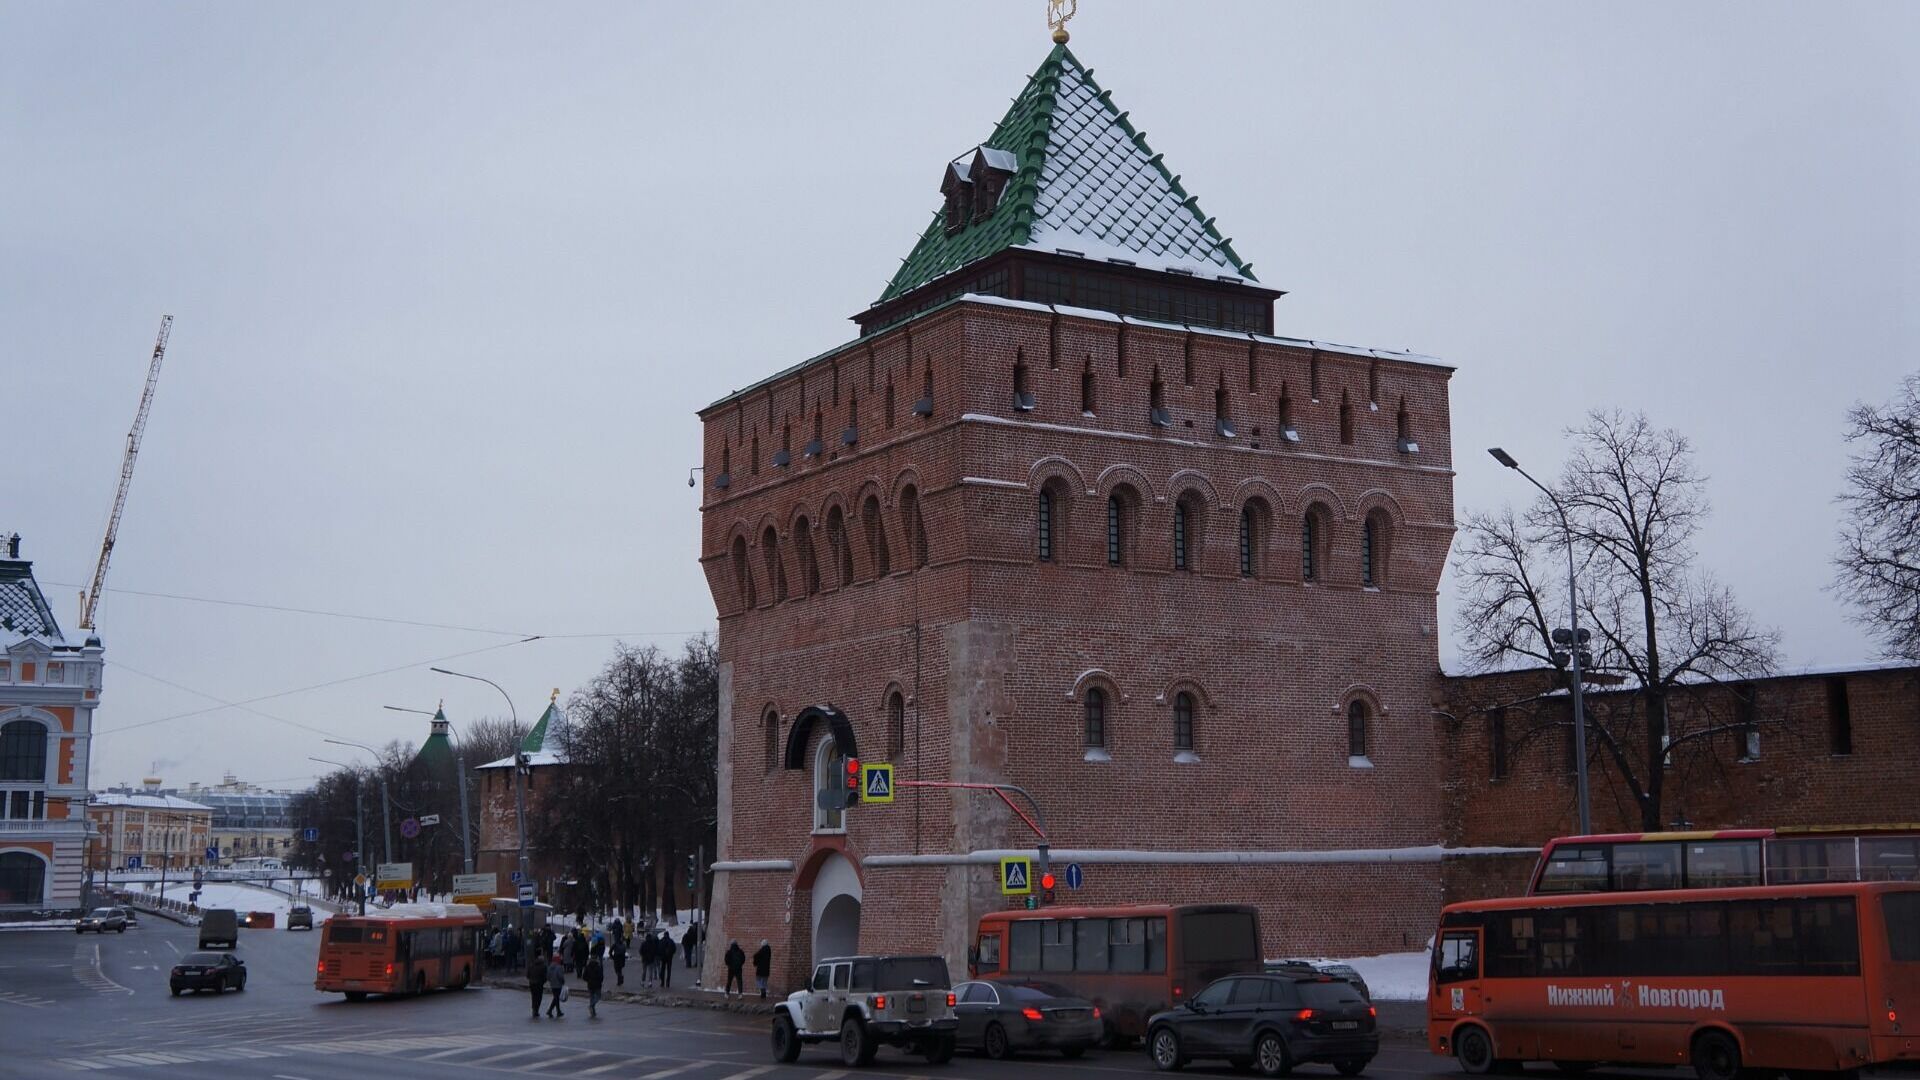 Лица выдающихся нижегородок украсят Дмитриевскую башню 8 марта